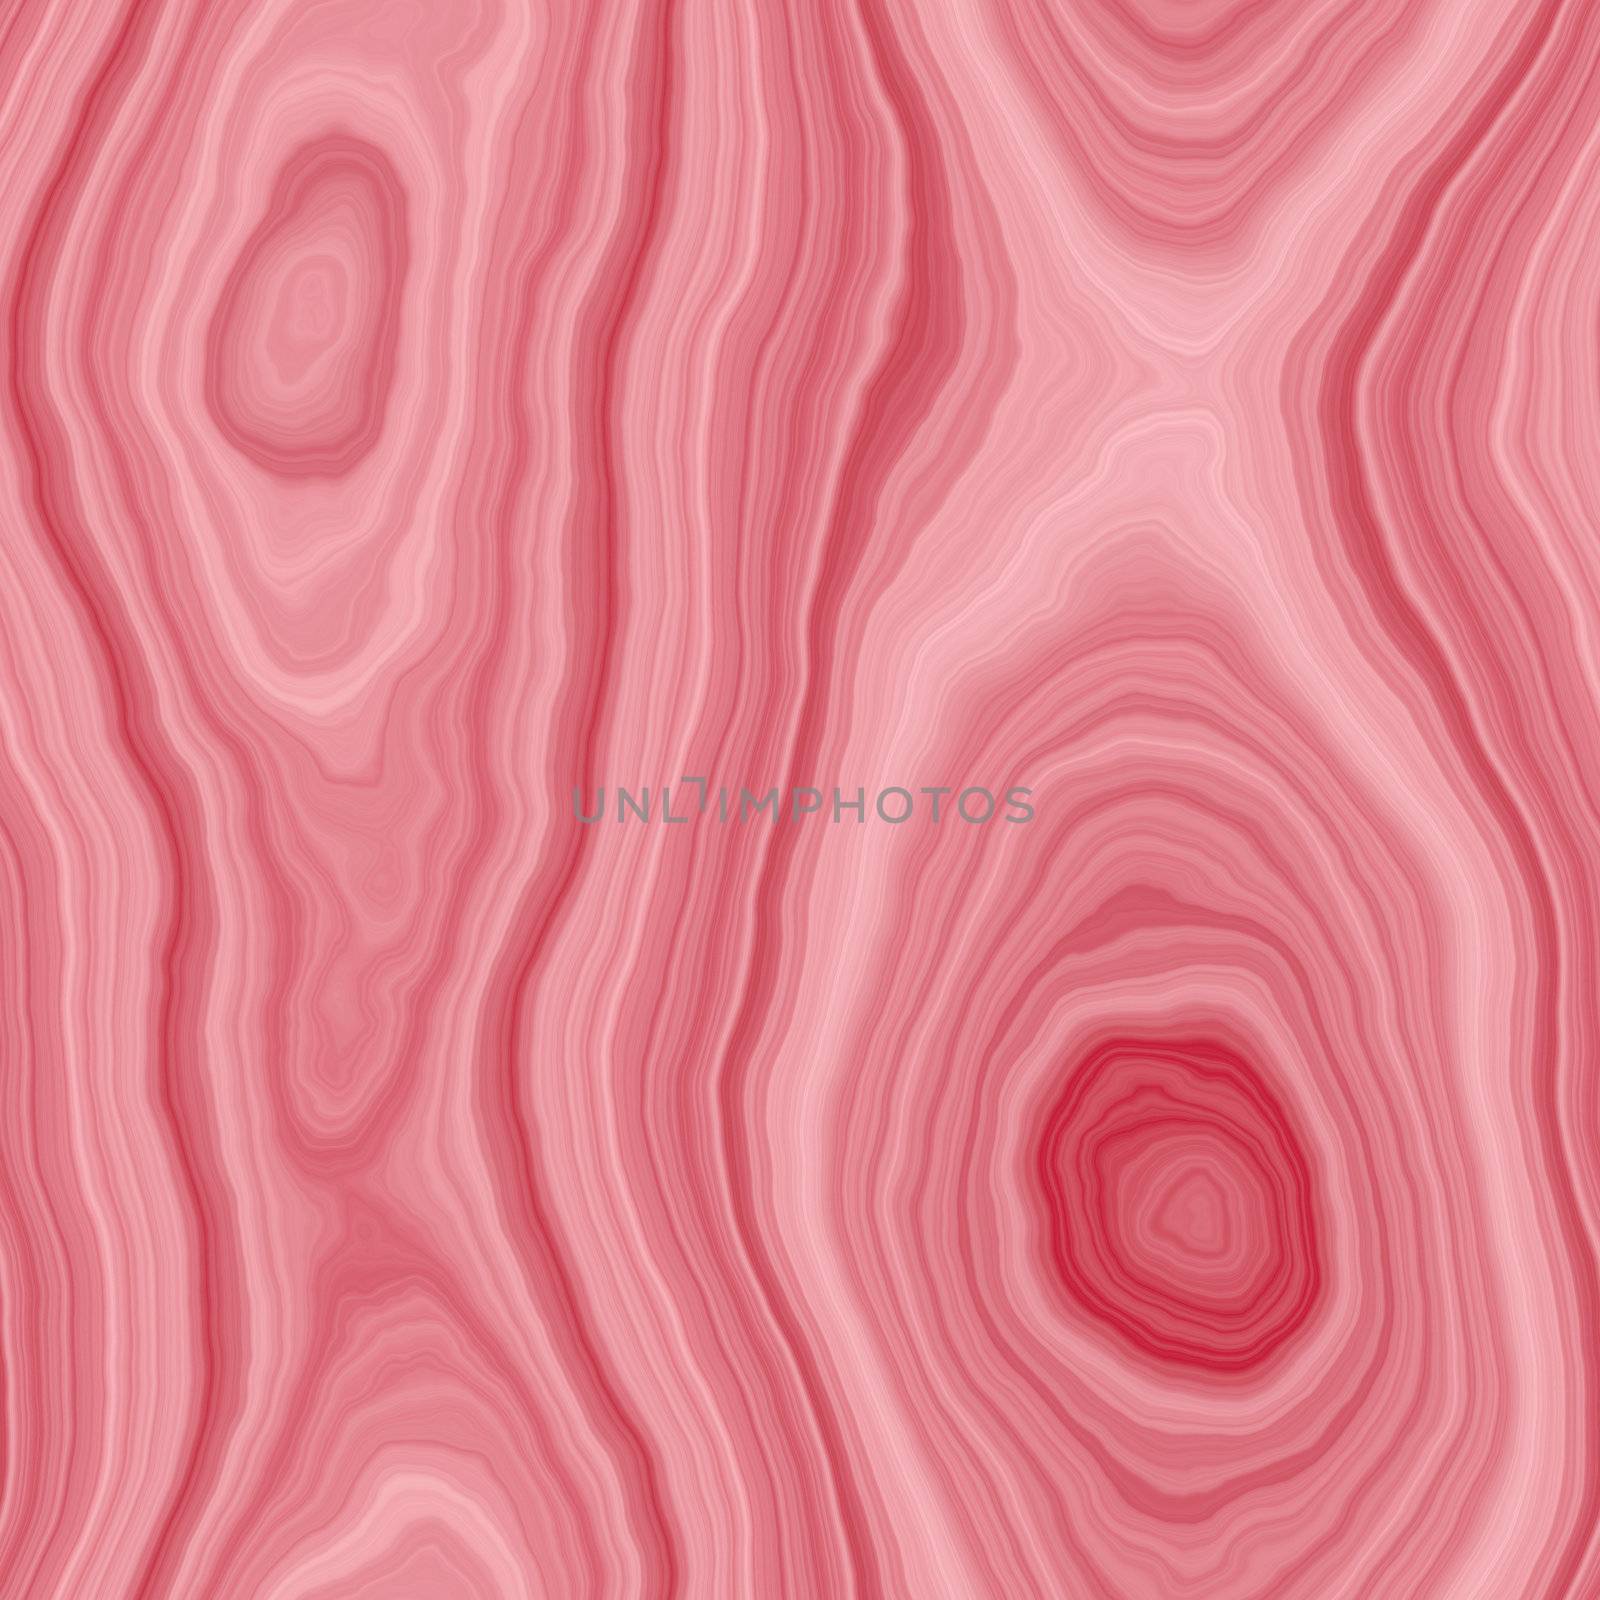 pink rosewood or rootwood veneer background, tiles seamlessly